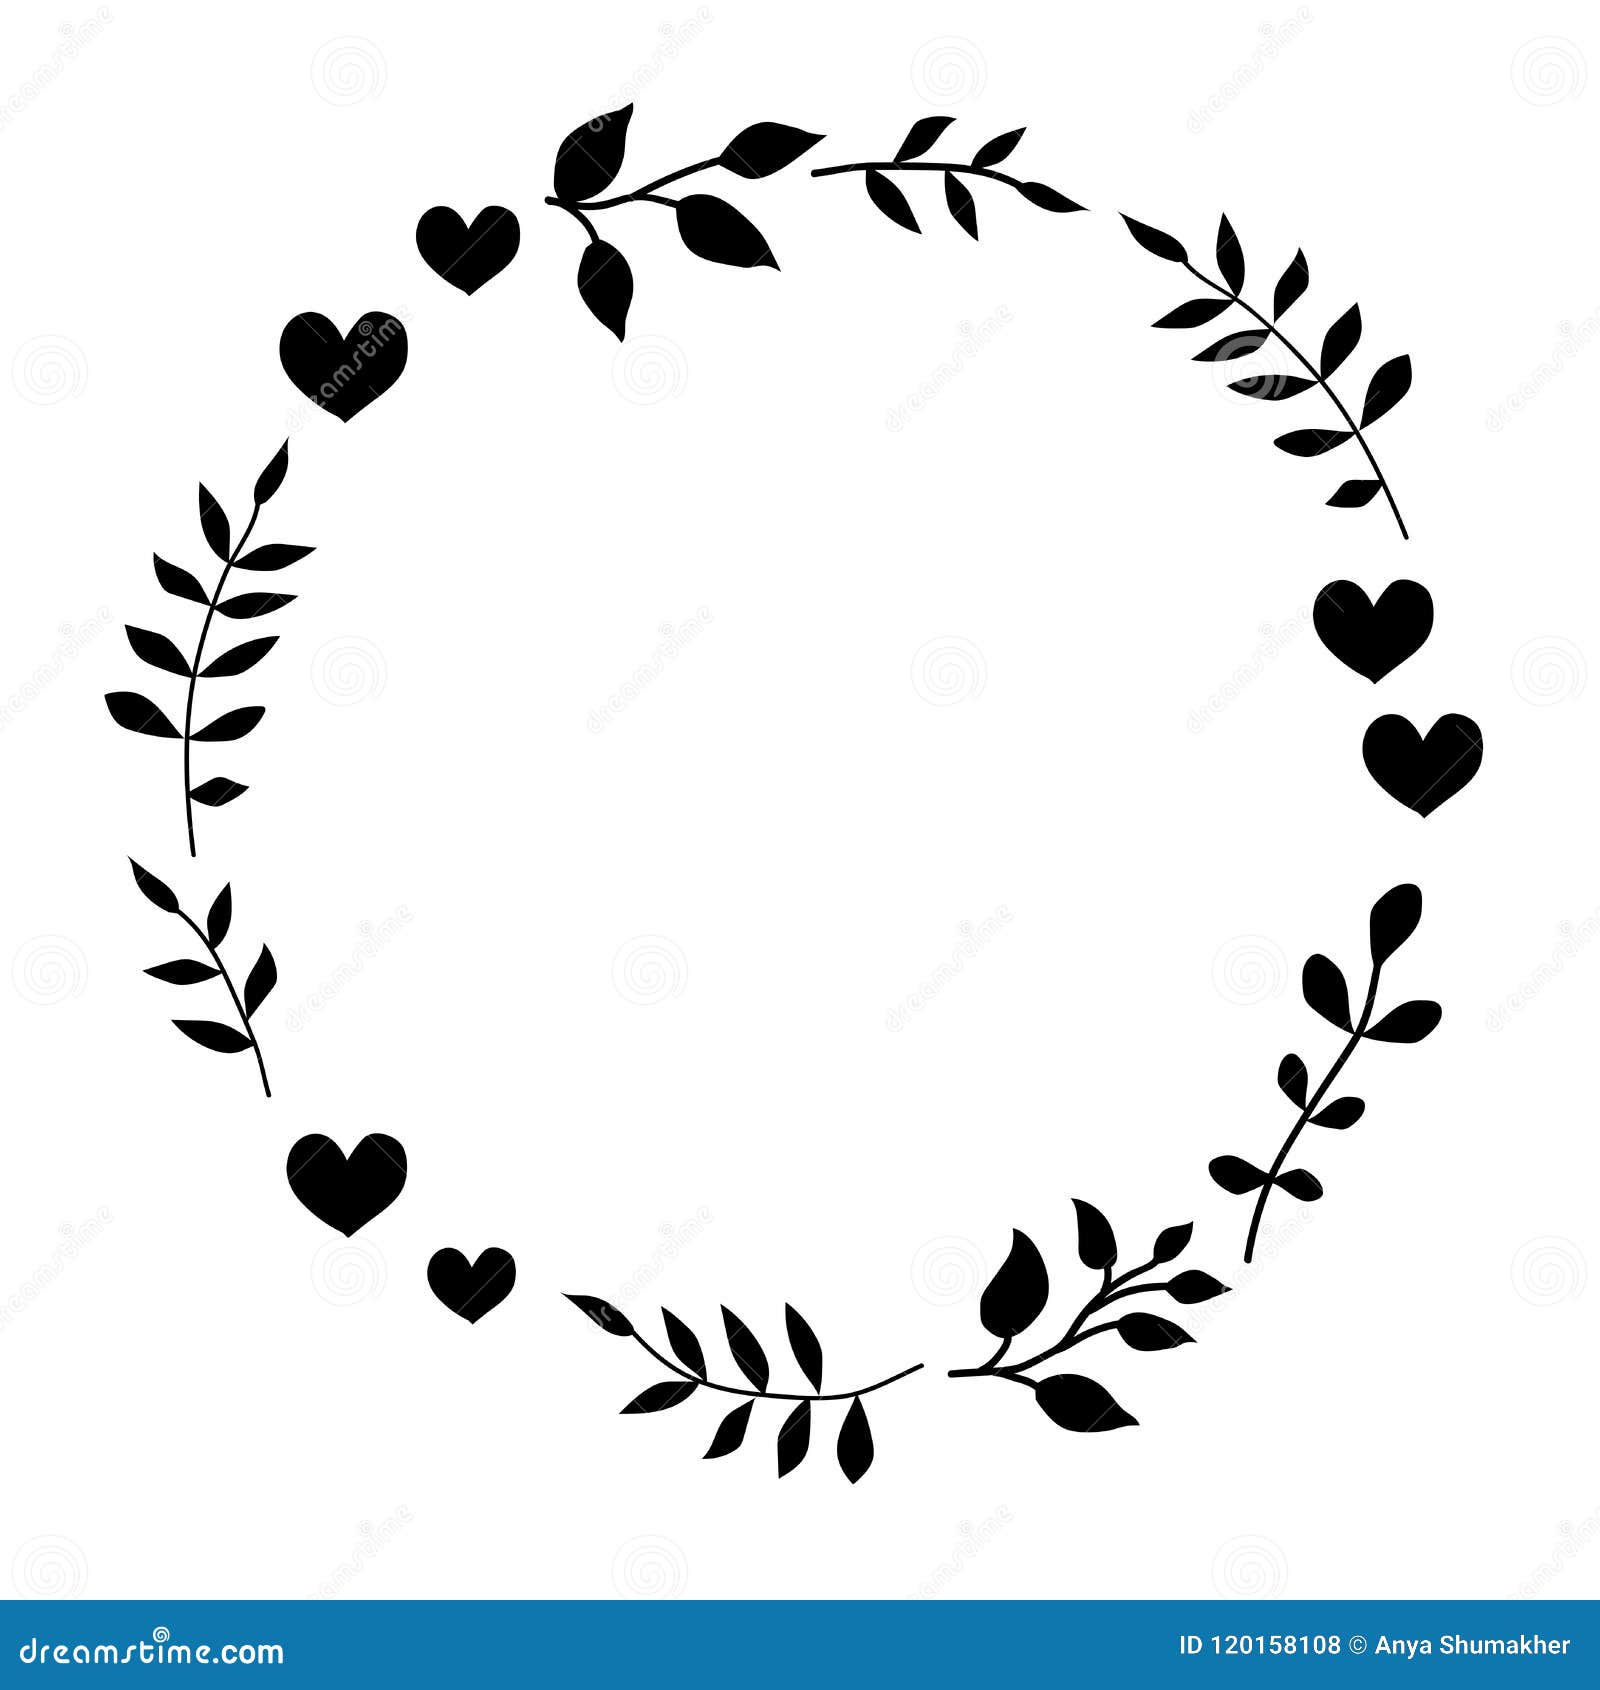 Doodle heart wreath frame vector clipart